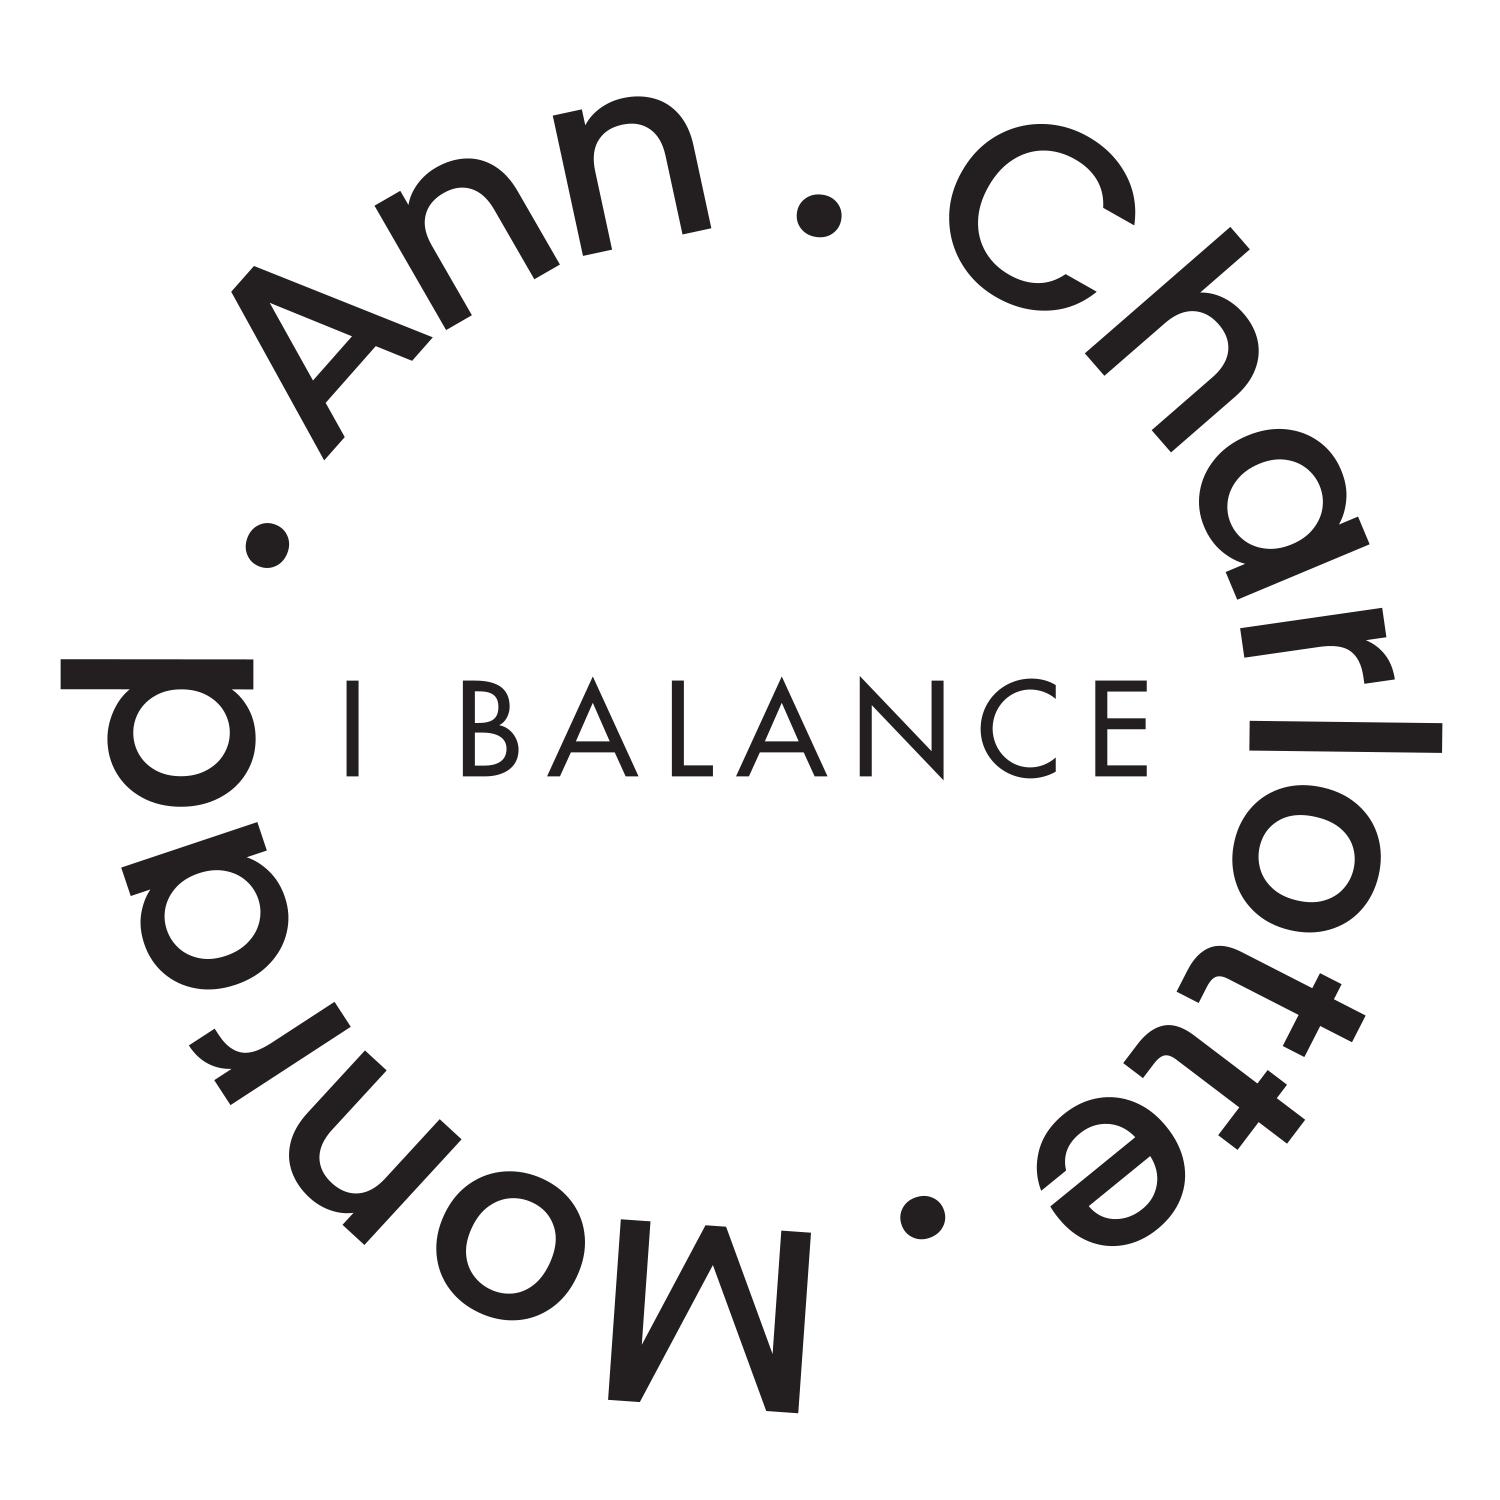 Ann-Charlotte Monrad i balance